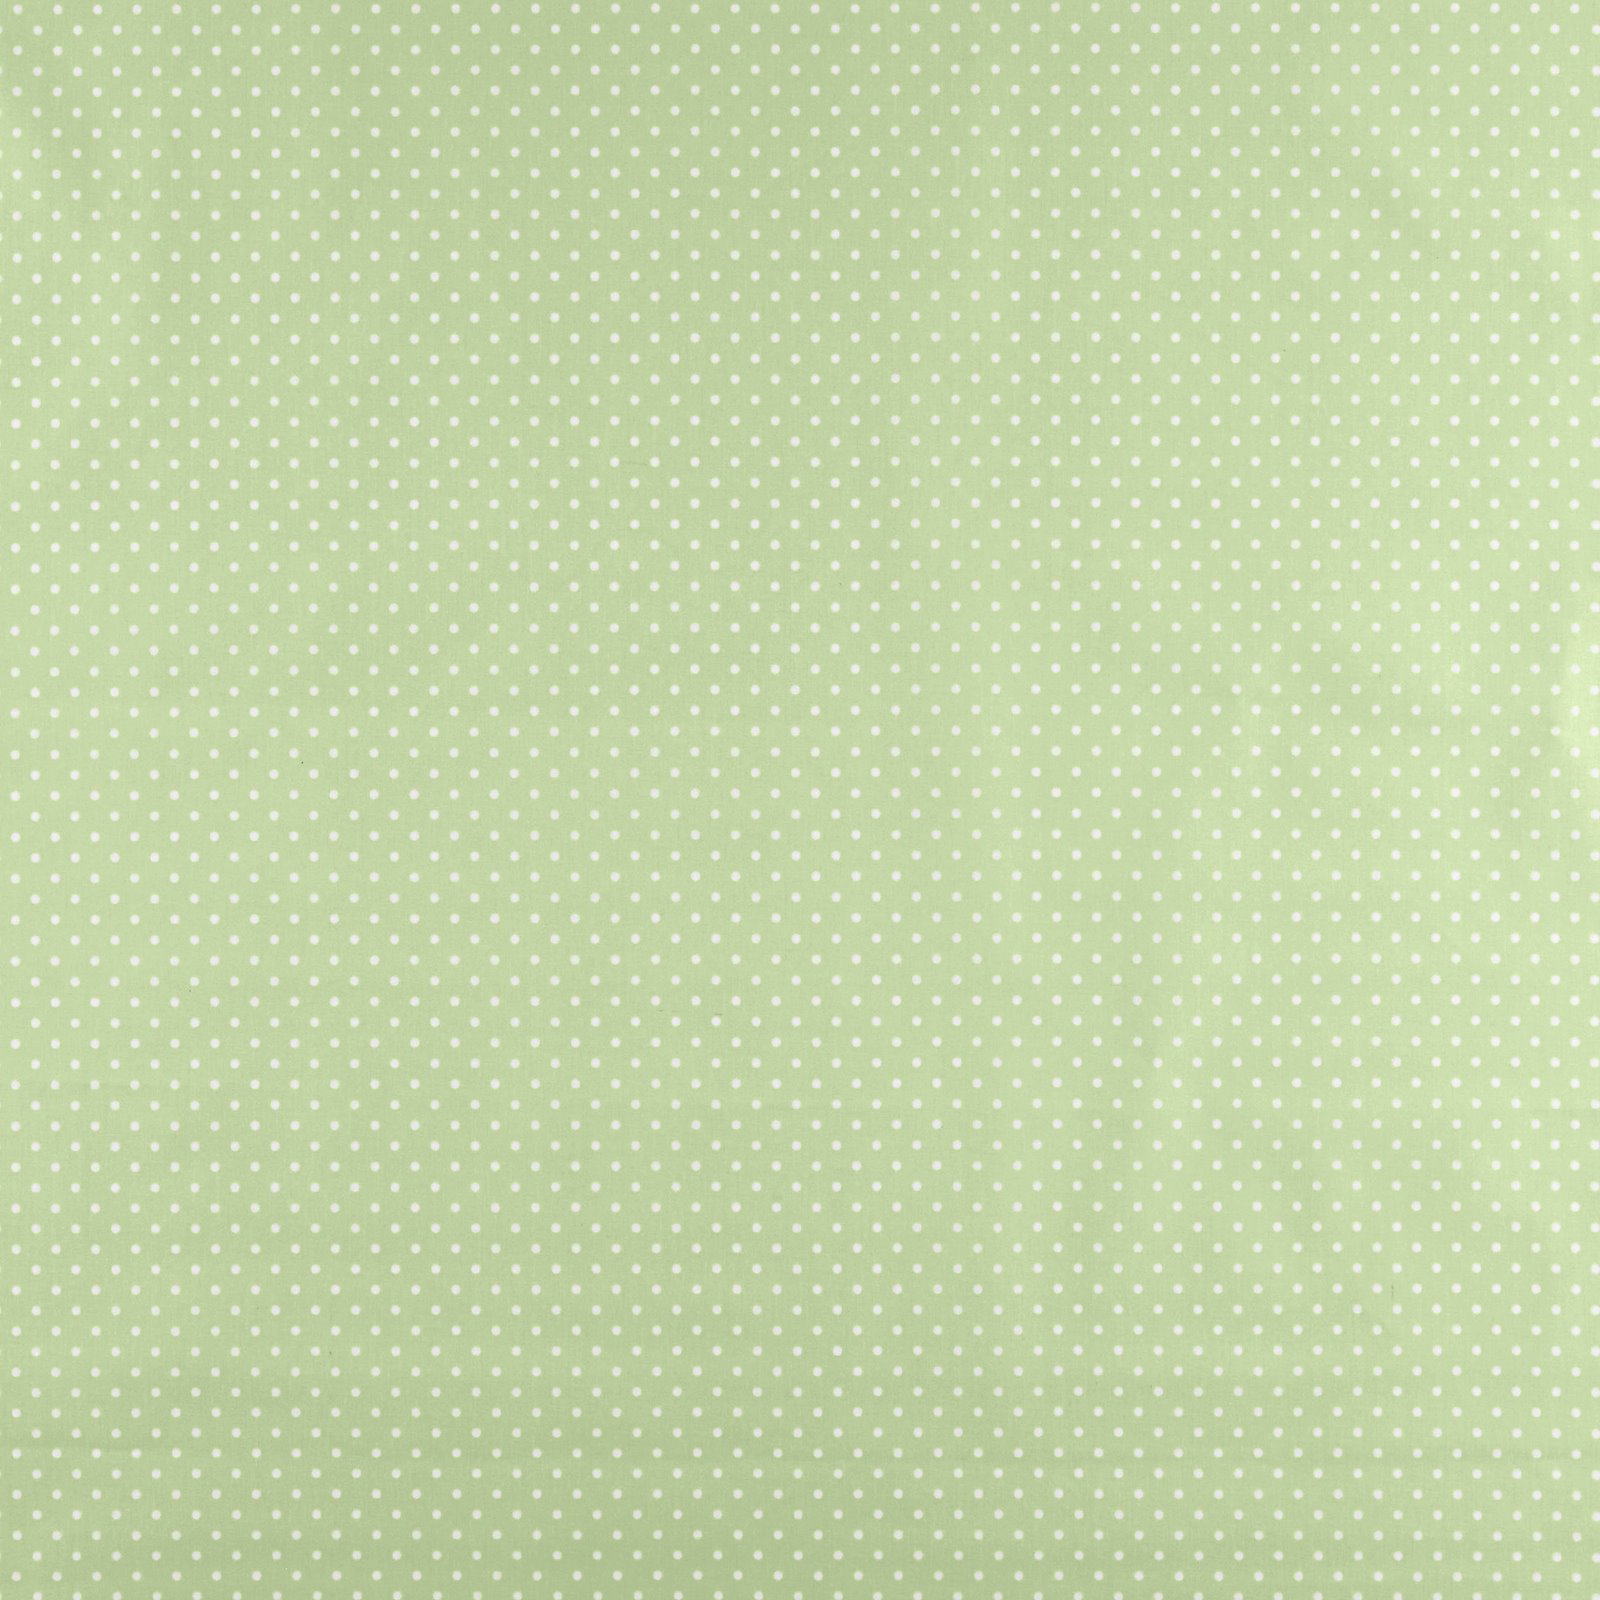 Tekstilvoksdug lys grøn m hvide prikker 861508_pack_sp